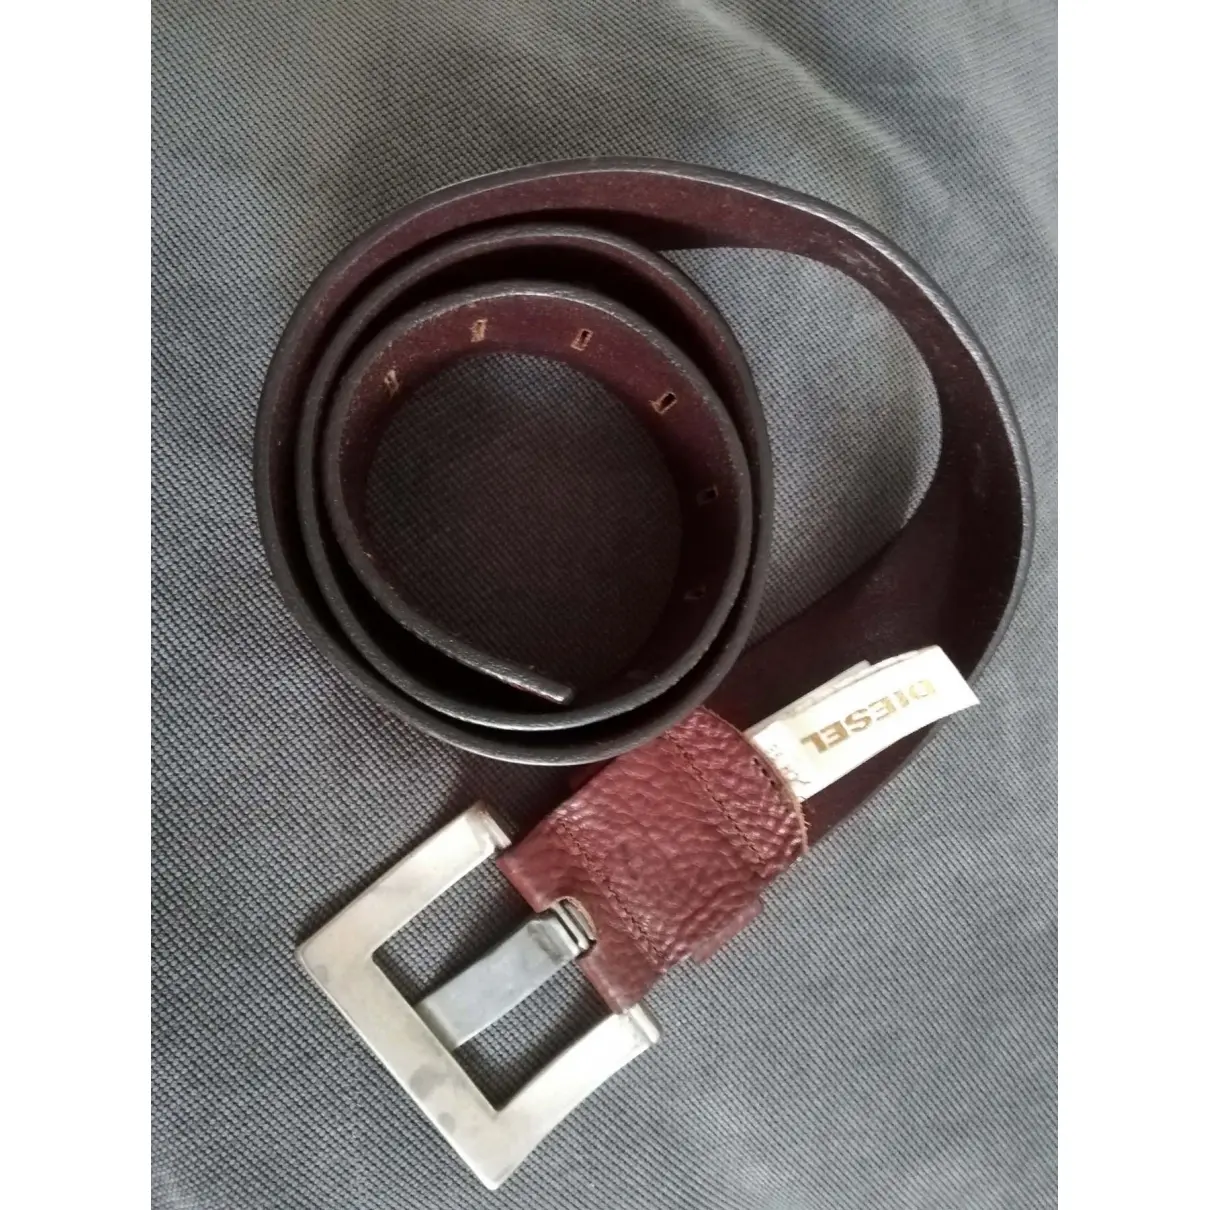 Buy Diesel Leather belt online